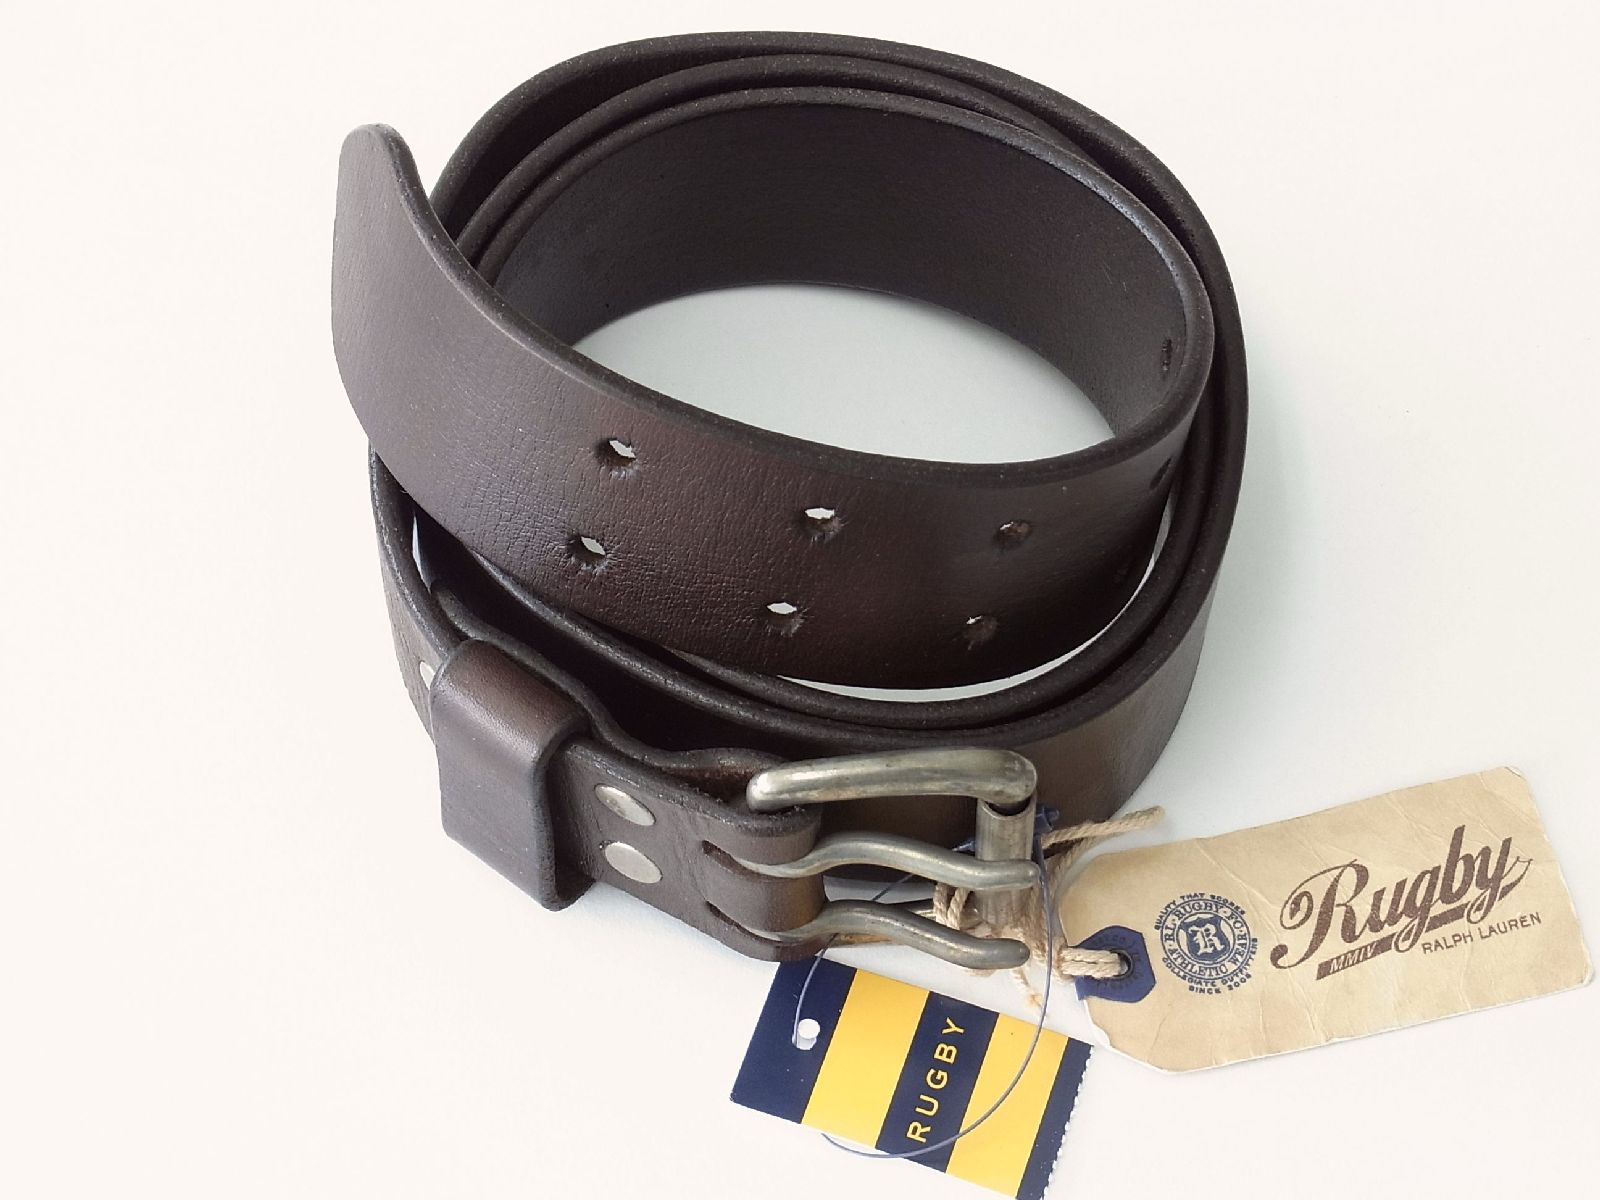 ラグビーbyラルフローレン ビンテージ レザーベルト ブラウン RUGBY by RalphLauren Vintage Leather Belt Brown